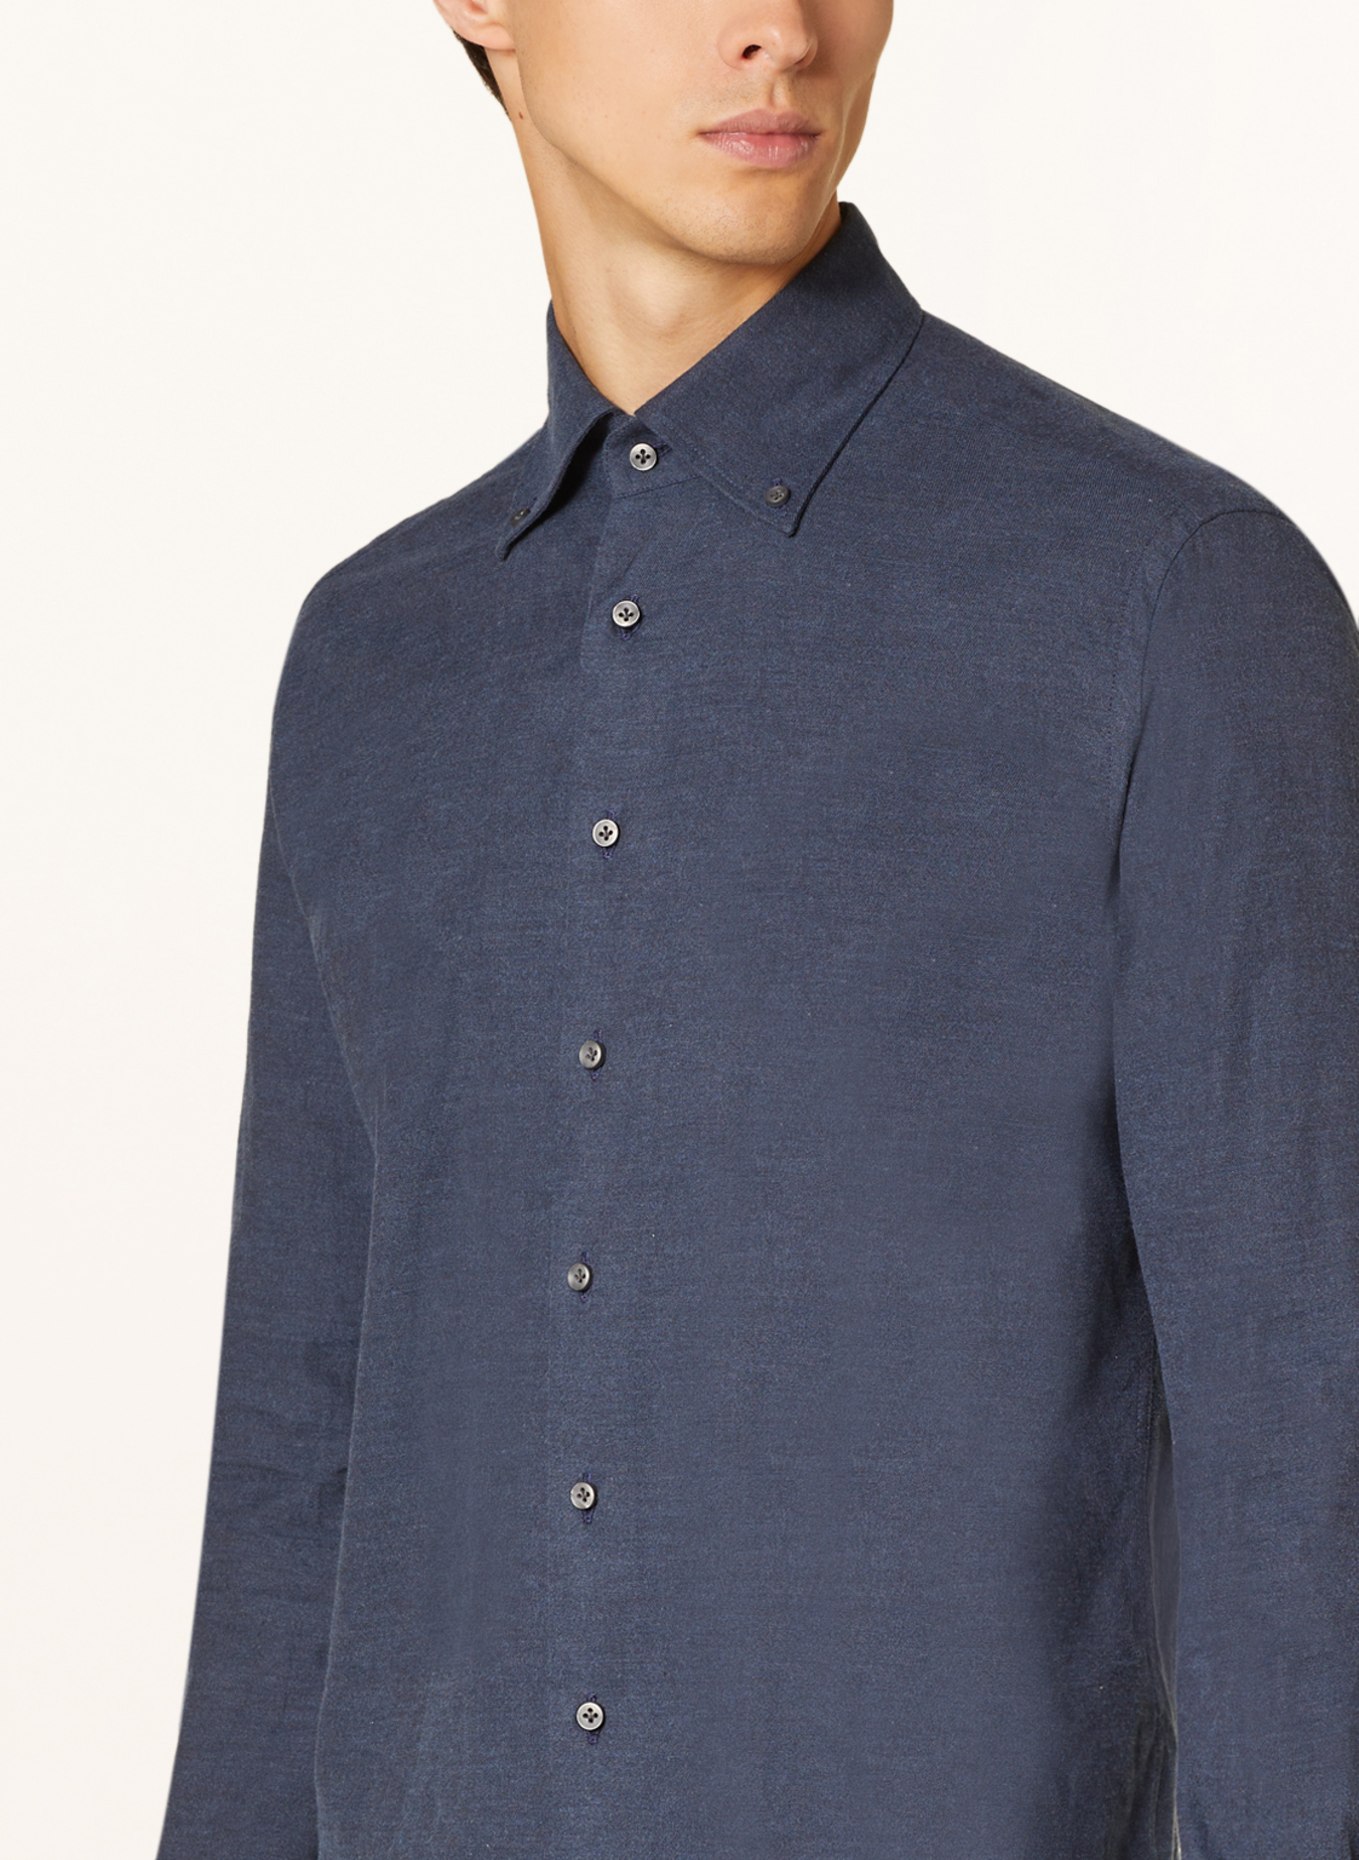 ARTIGIANO Flannel shirt regular fit, Color: BLUE GRAY (Image 4)